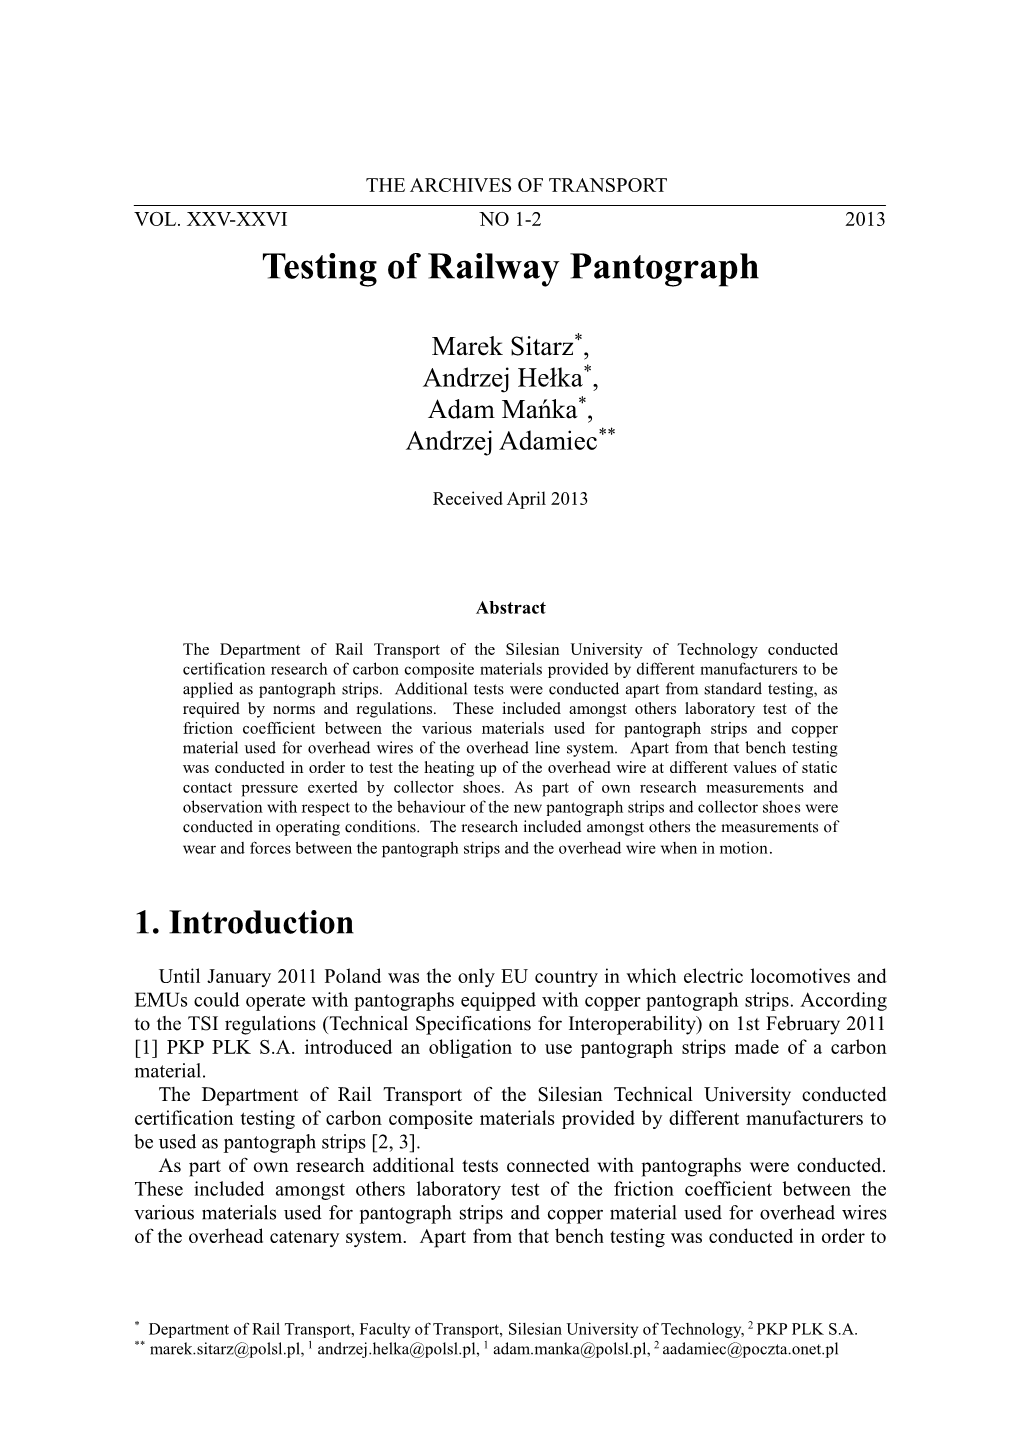 Testing of Railway Pantograph